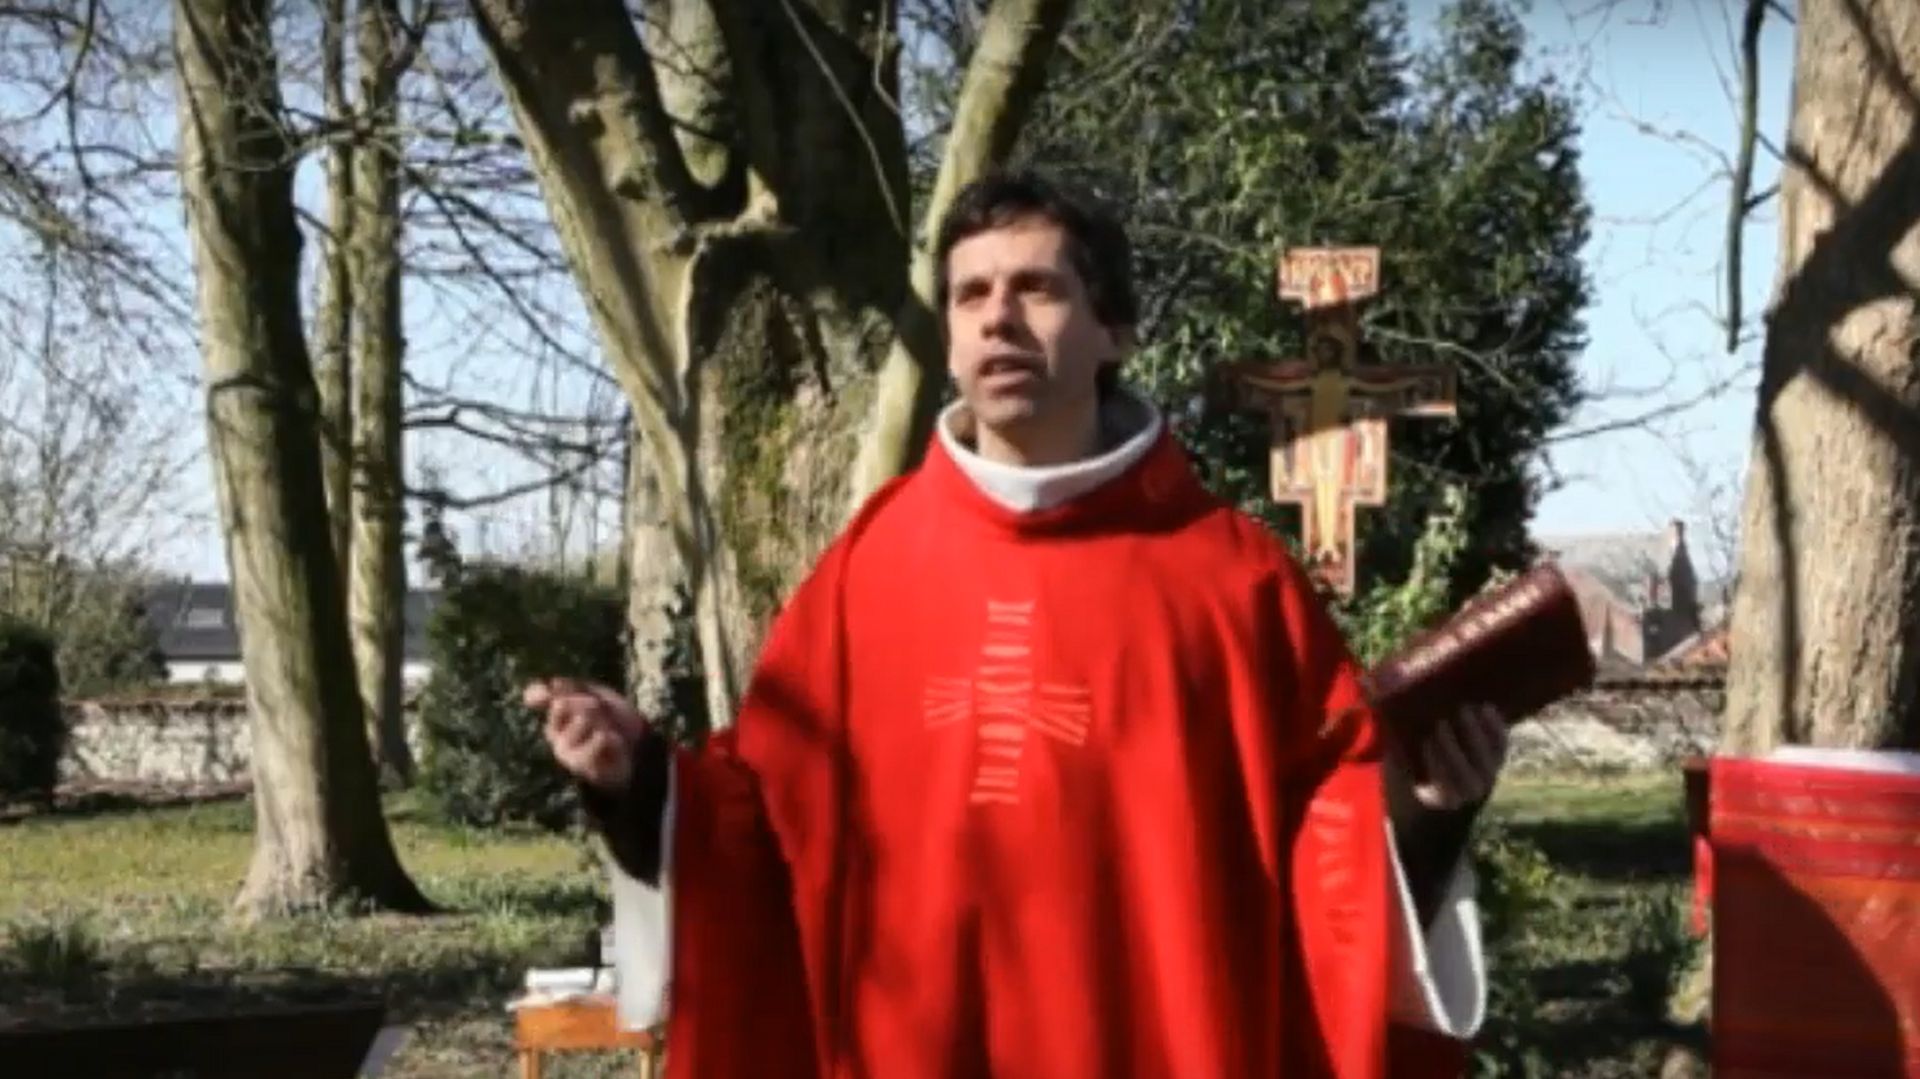 Dany Pierre célébrera encore les messes du Vendredi Saint et de la veillée pascale sur sa chaîne YouTube.